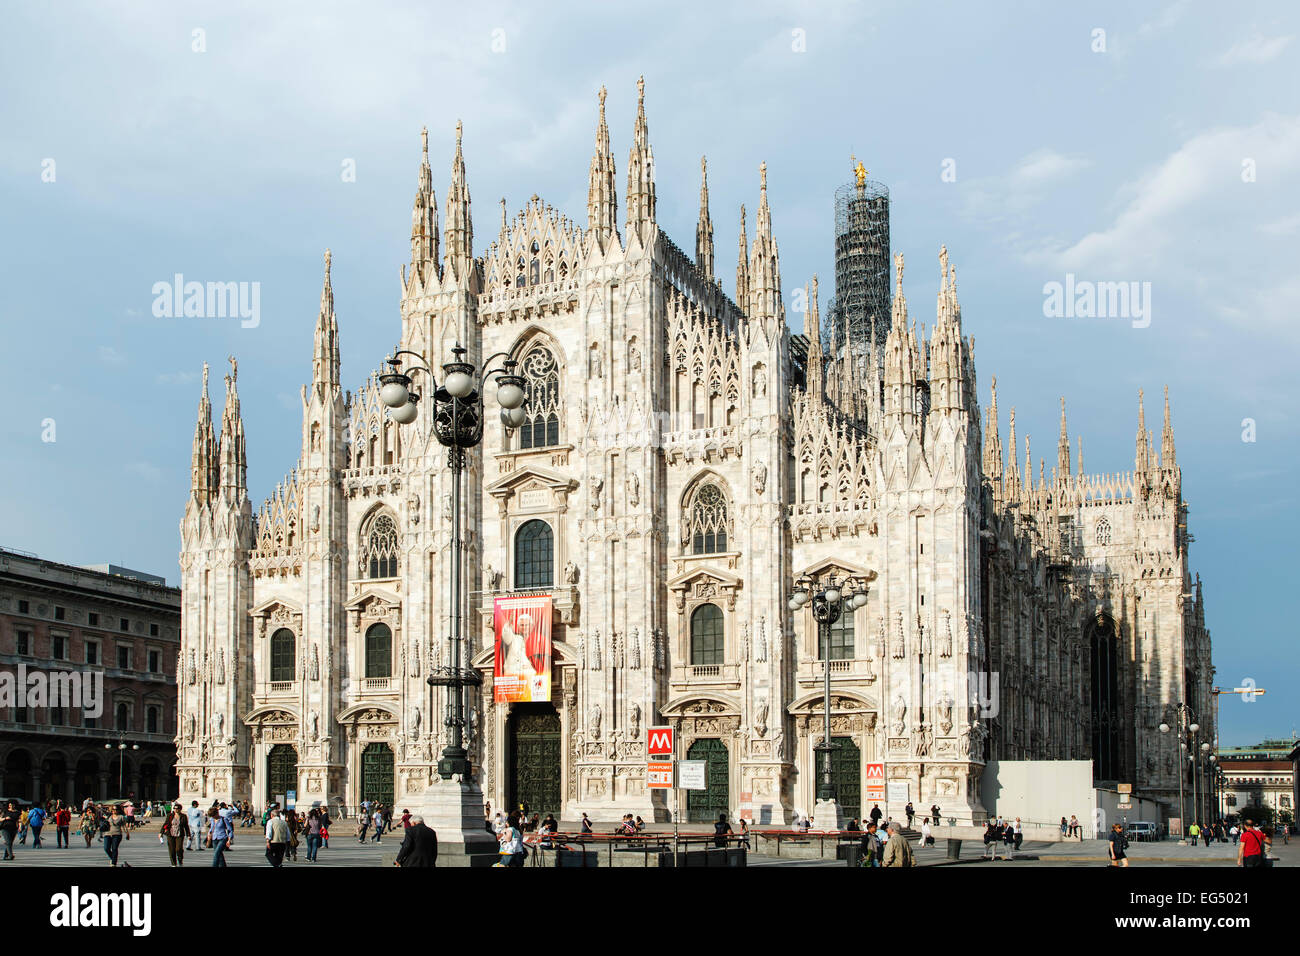 La cathédrale de Milan (Duomo di Milano) et les gens sur la place du Duomo, Milan, Italie Banque D'Images